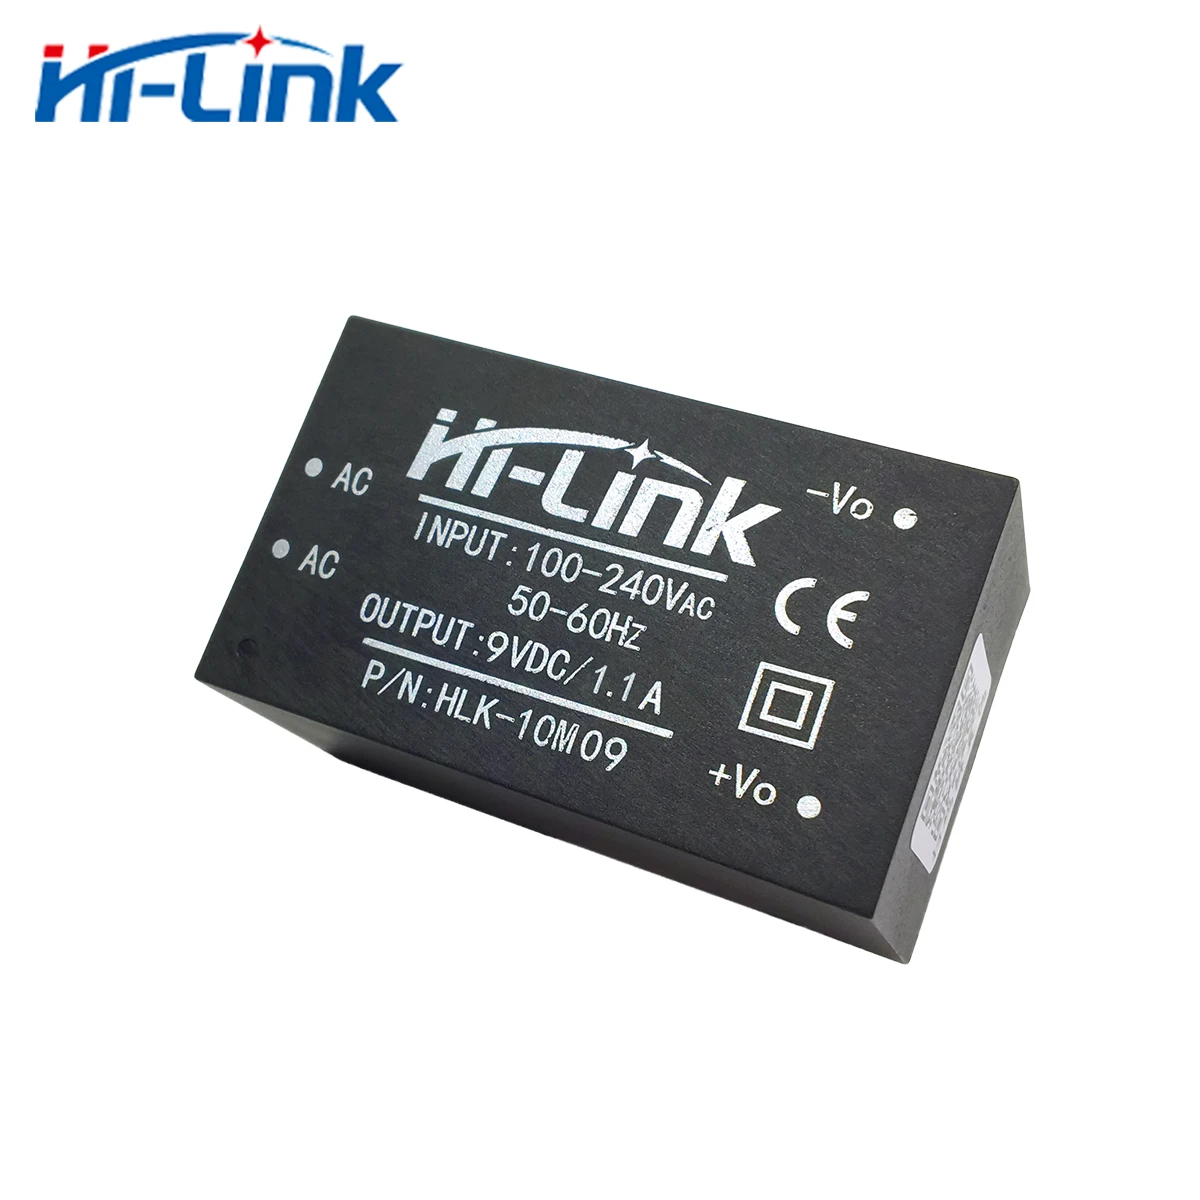 Envío gratis de Hi-Link 2pcs 220v 9V 10W AC DC aislado hogar inteligente compacto de conmutación de potencia mini supplymodule HLK-10M09 Imagen 1